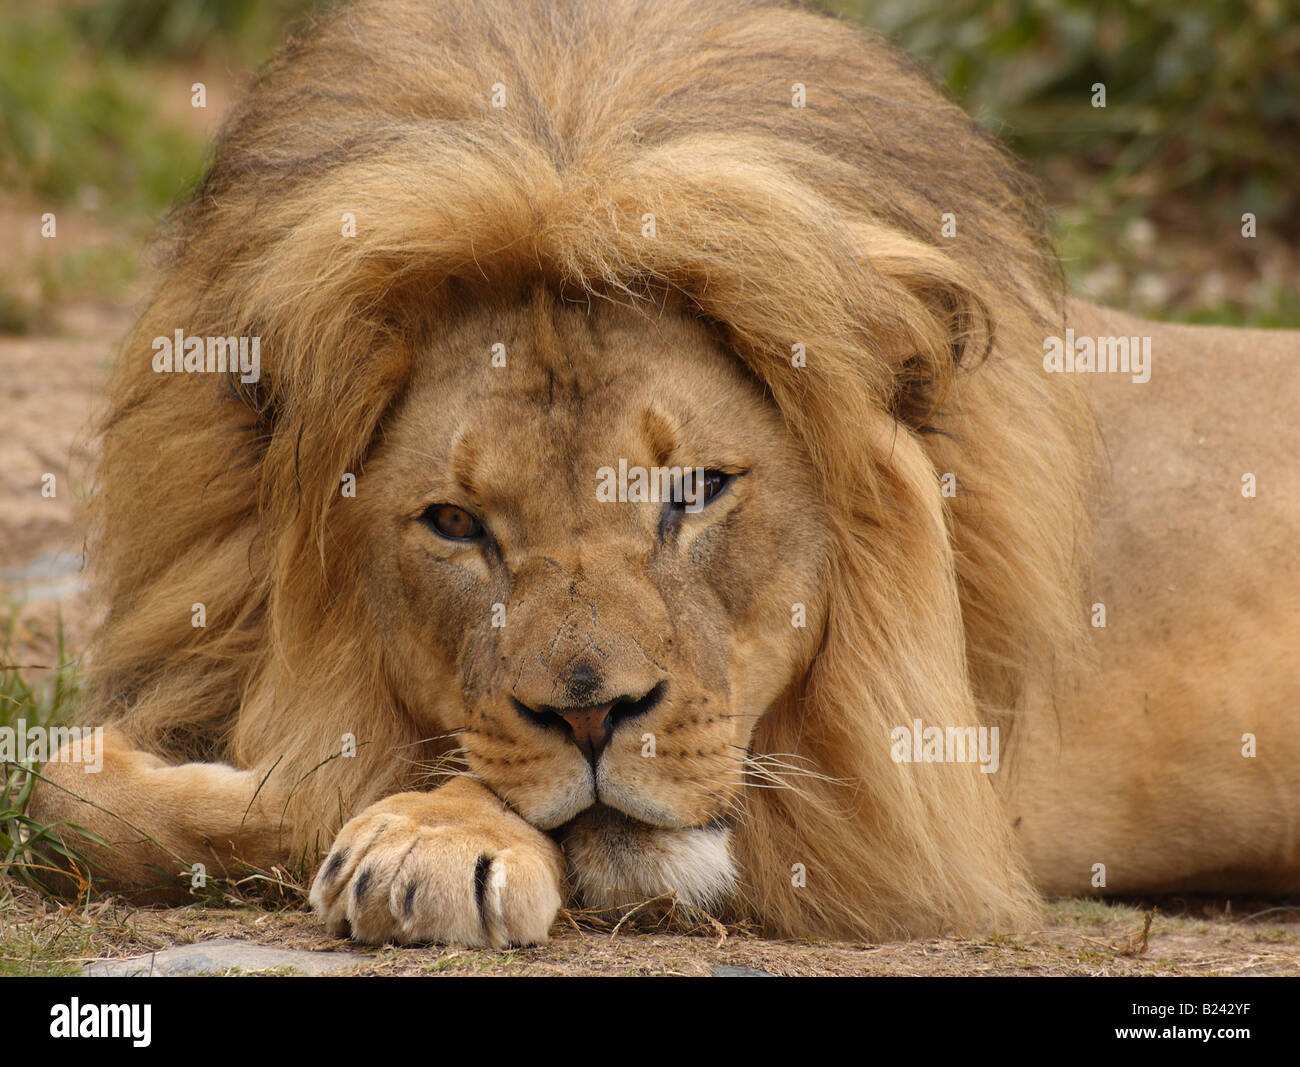 Un portrait de l'african lion au repos à regarder le spectateur Banque D'Images